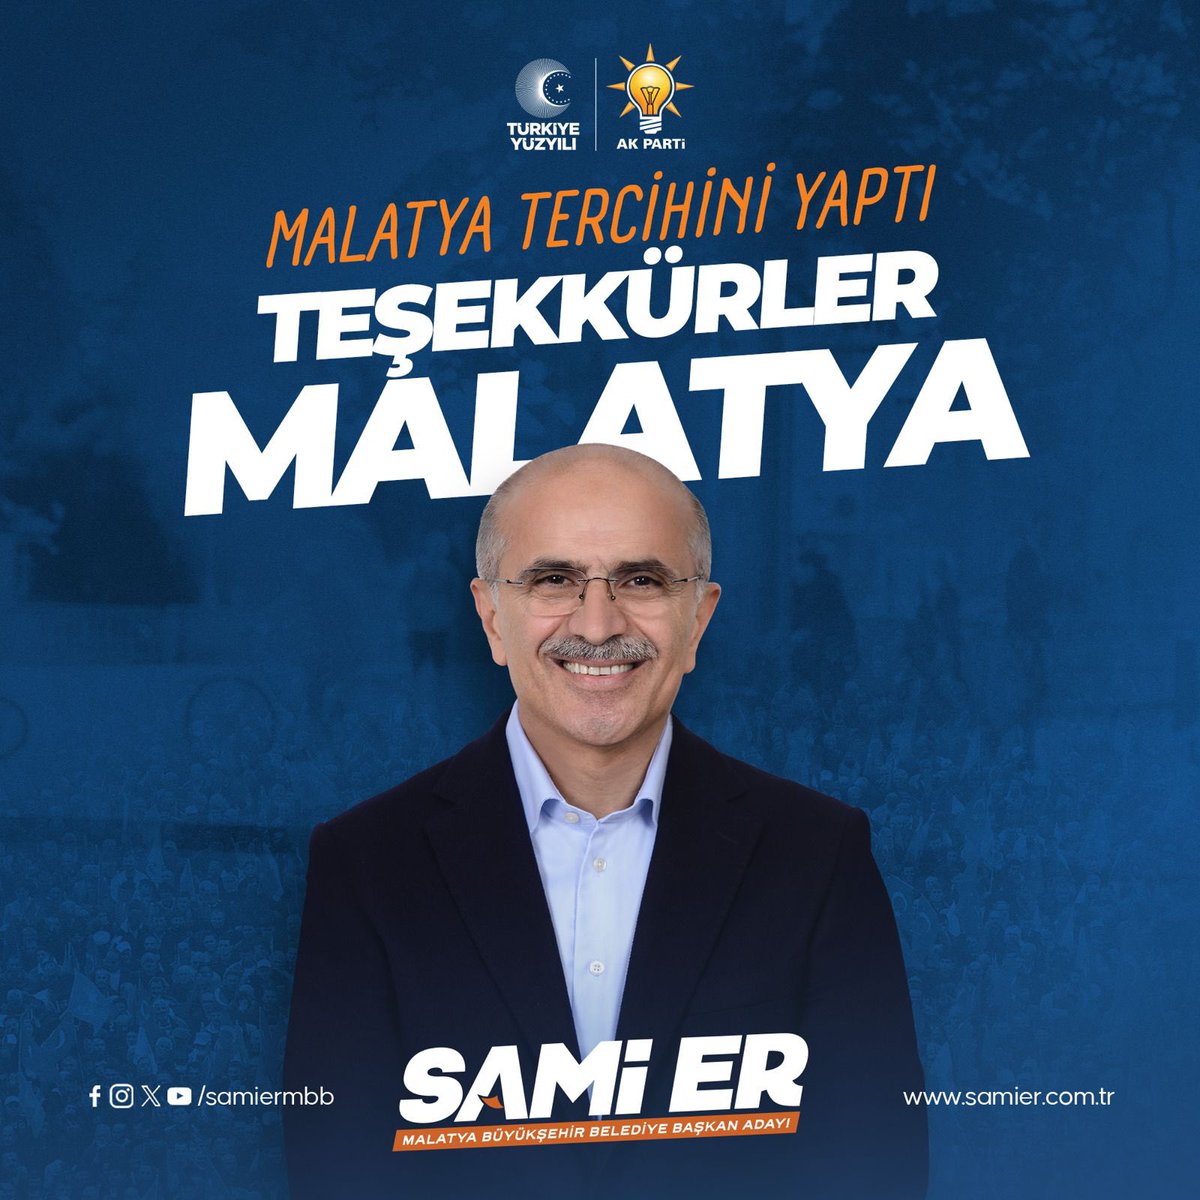 Malatya tercihini yaptı. Gerçek Belediyecilik AK Parti’den yana kullandı. Teşekkürler MALATYA ❤️ #Malatya